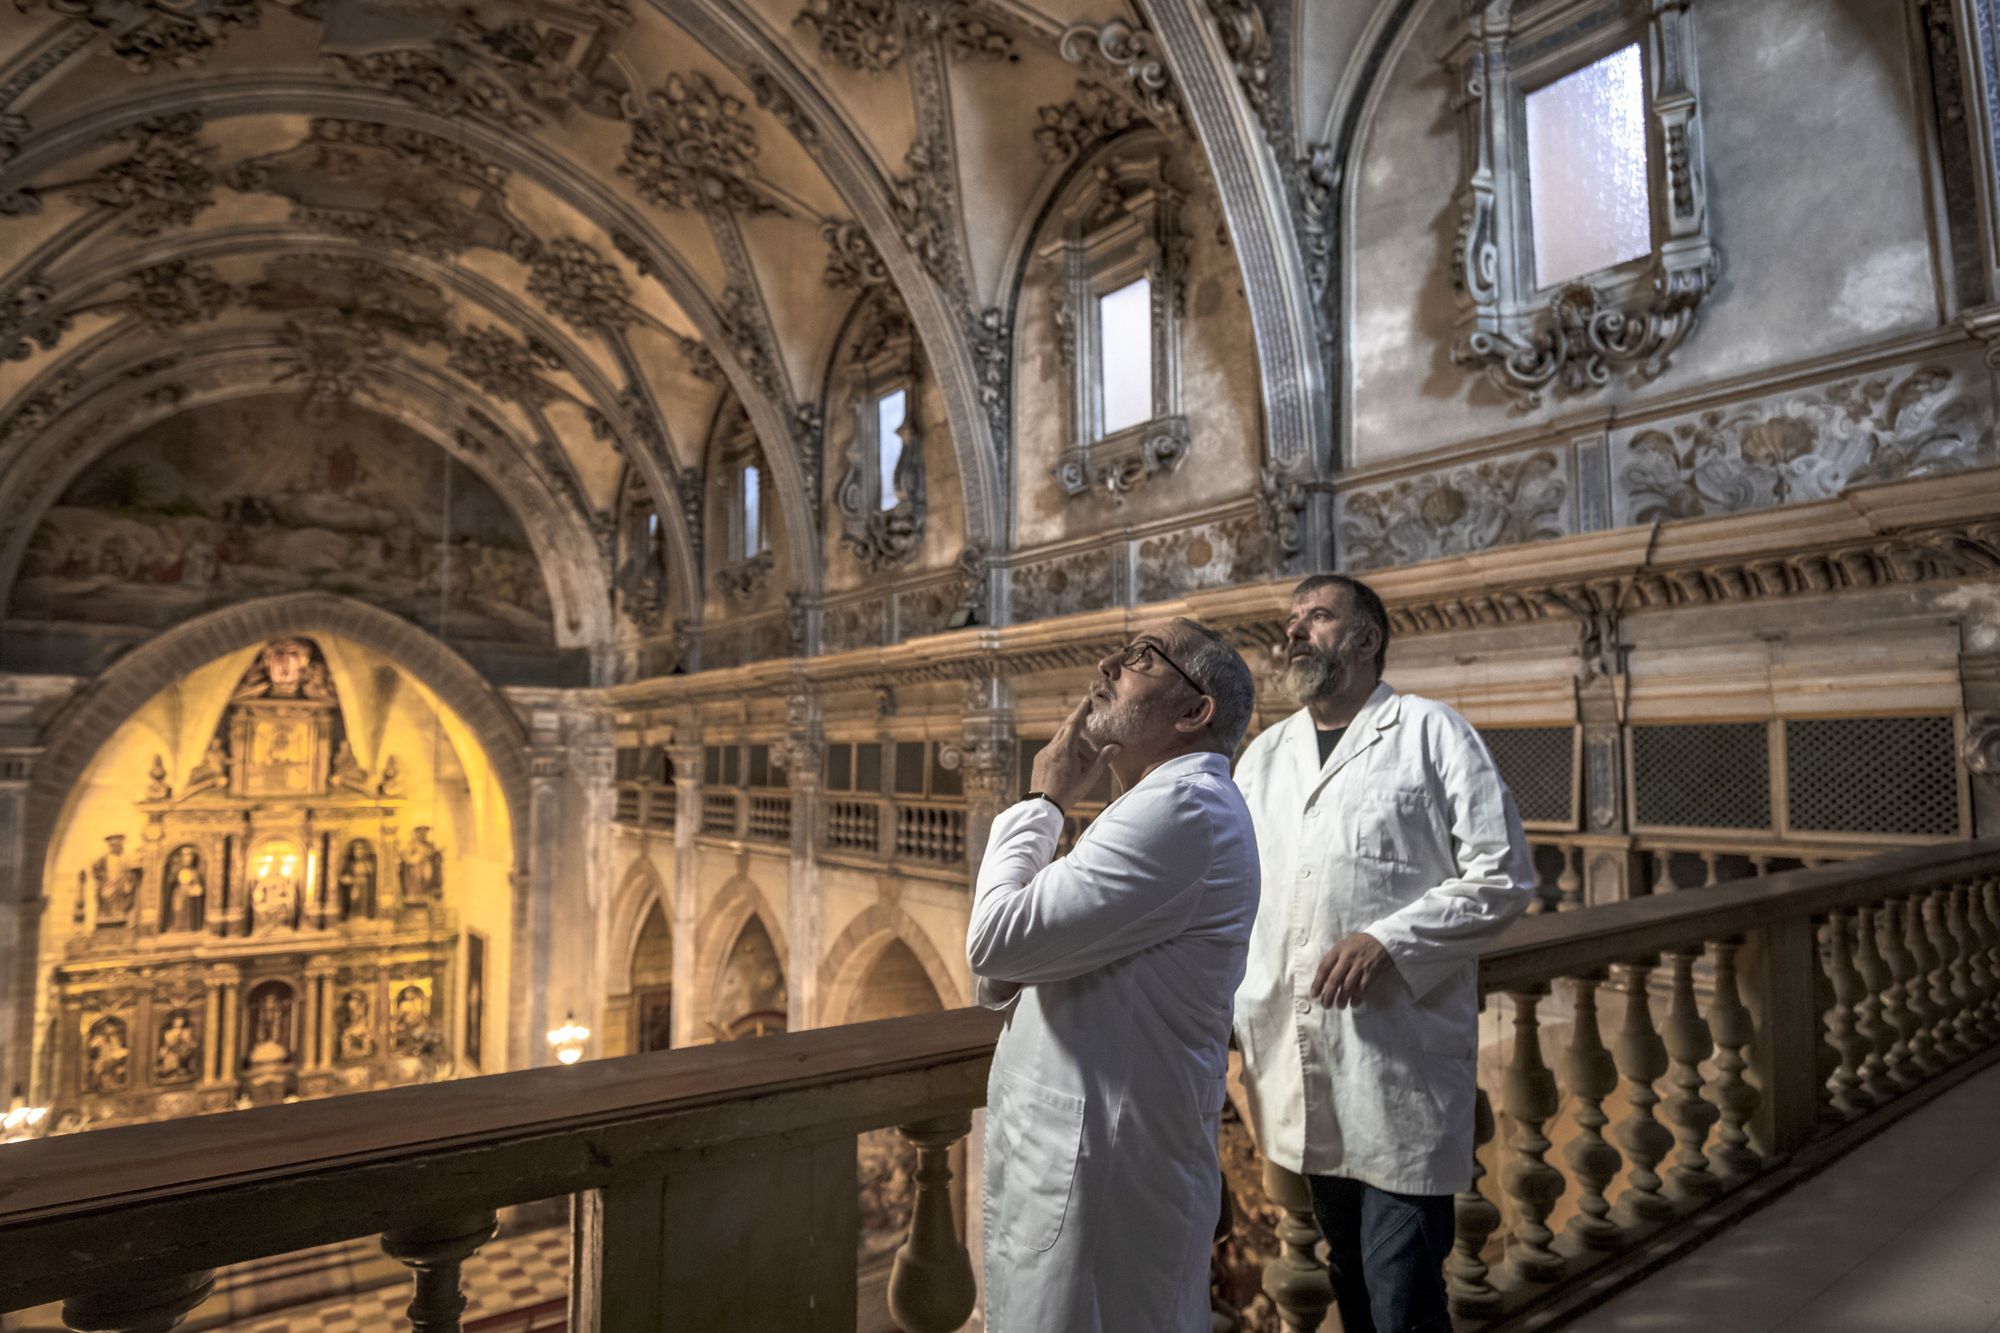 Fotogalerie: So sieht die spektakuläre Kirche Montision in Palma de Mallorca aus, die jetzt renoviert wird